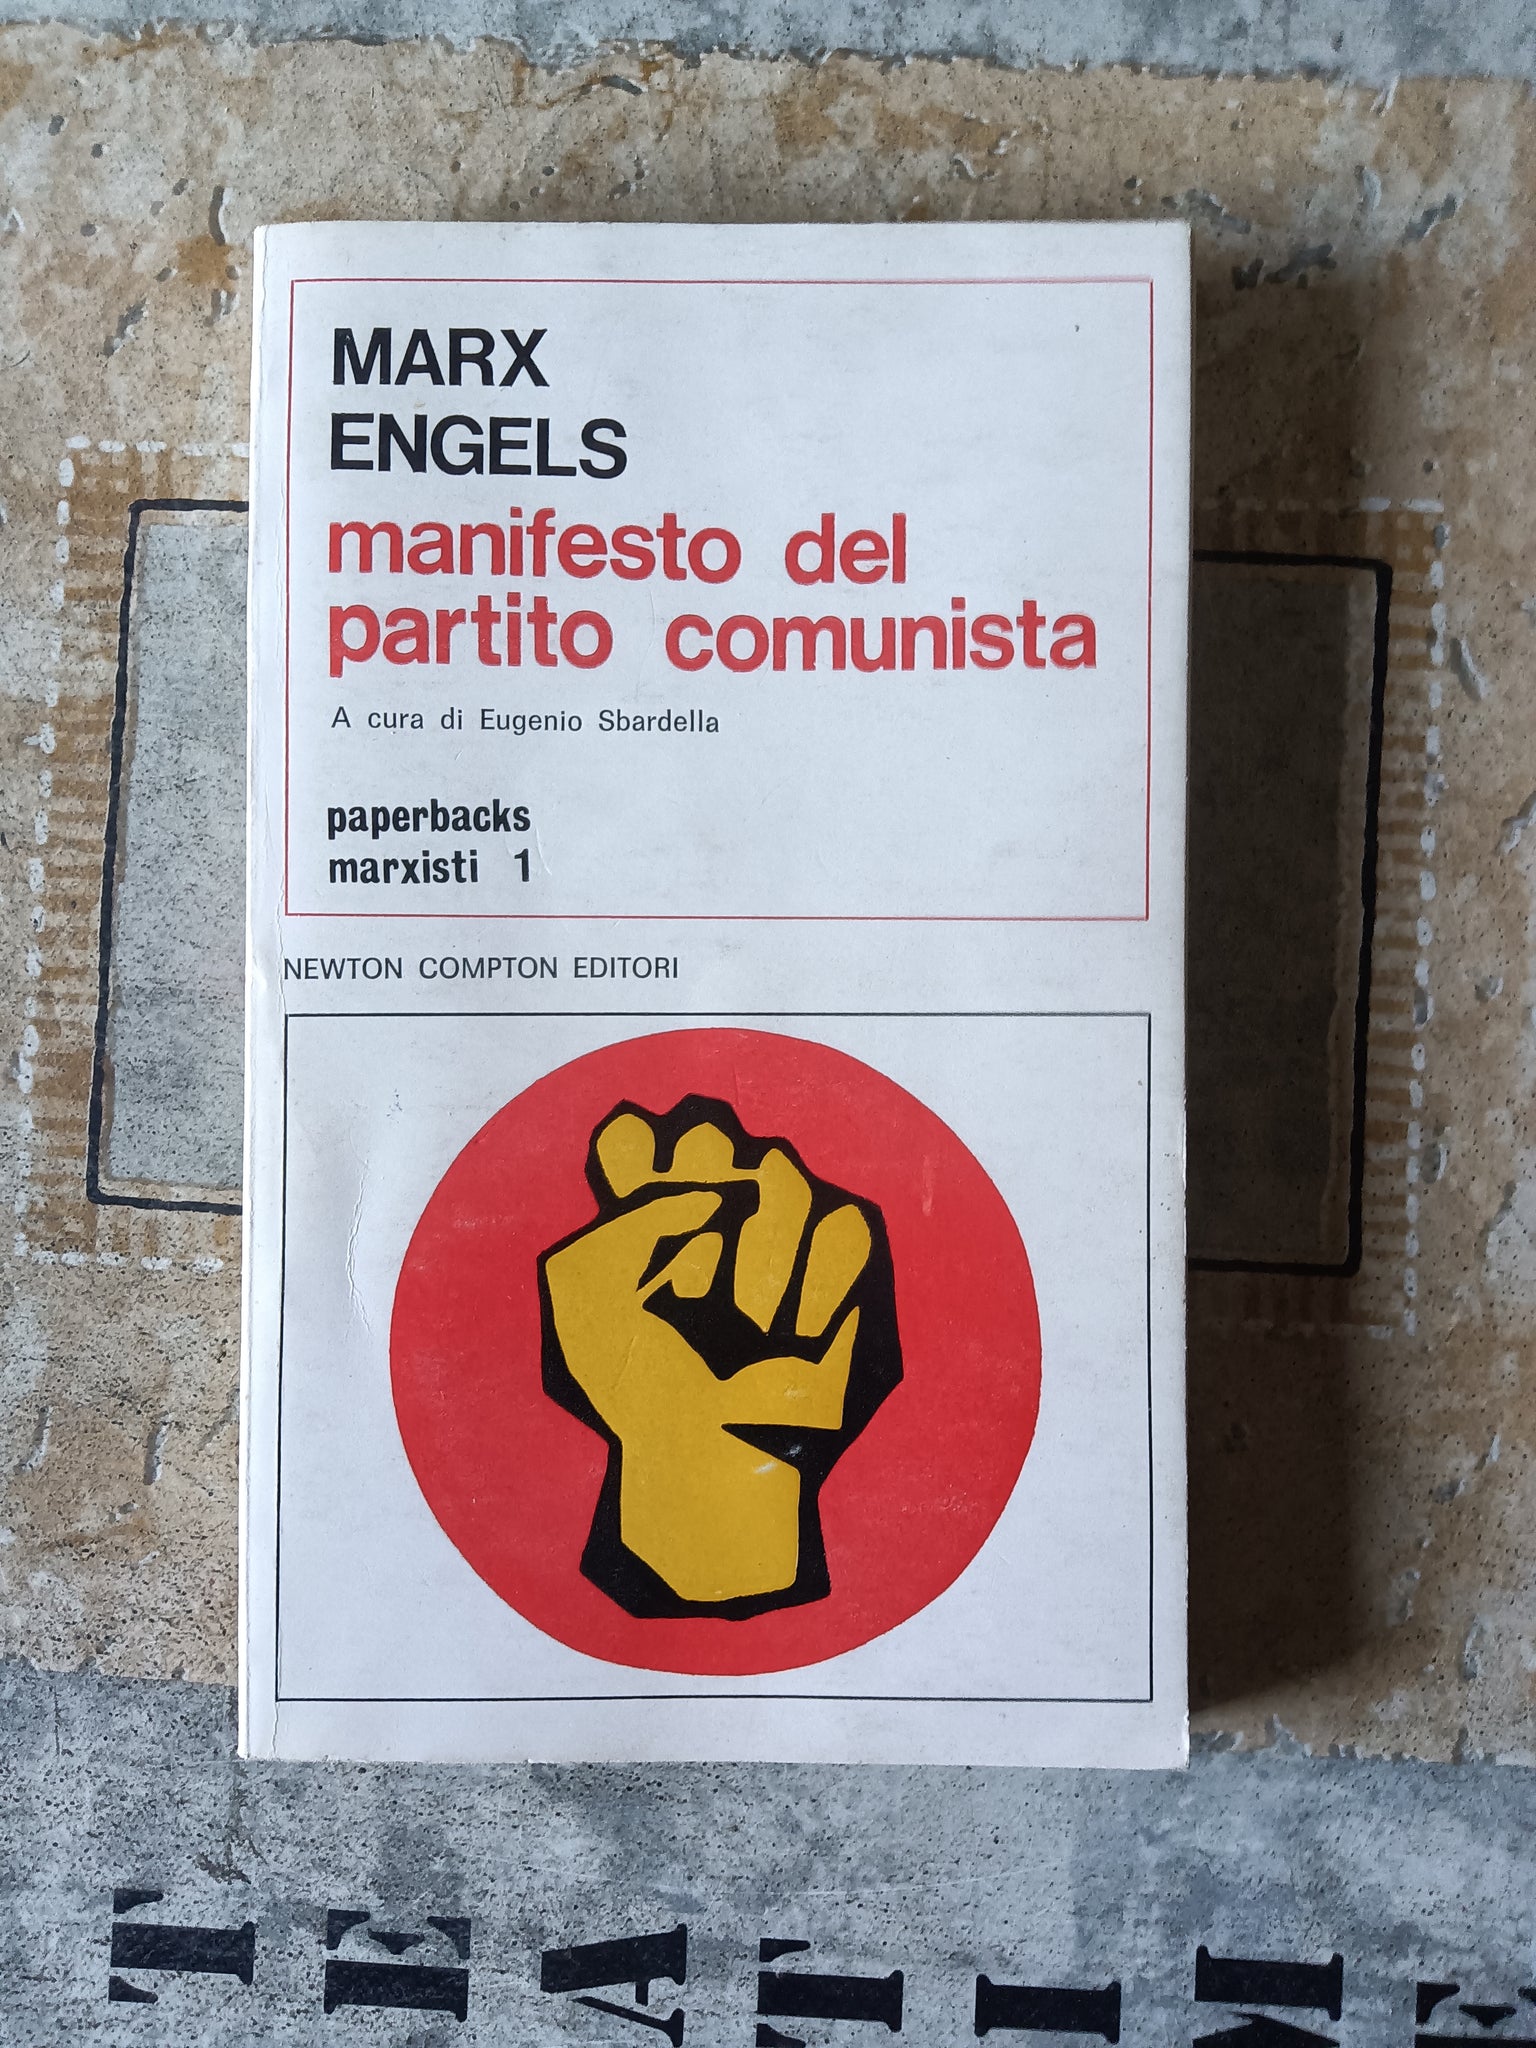 Manifesto del partito comunista